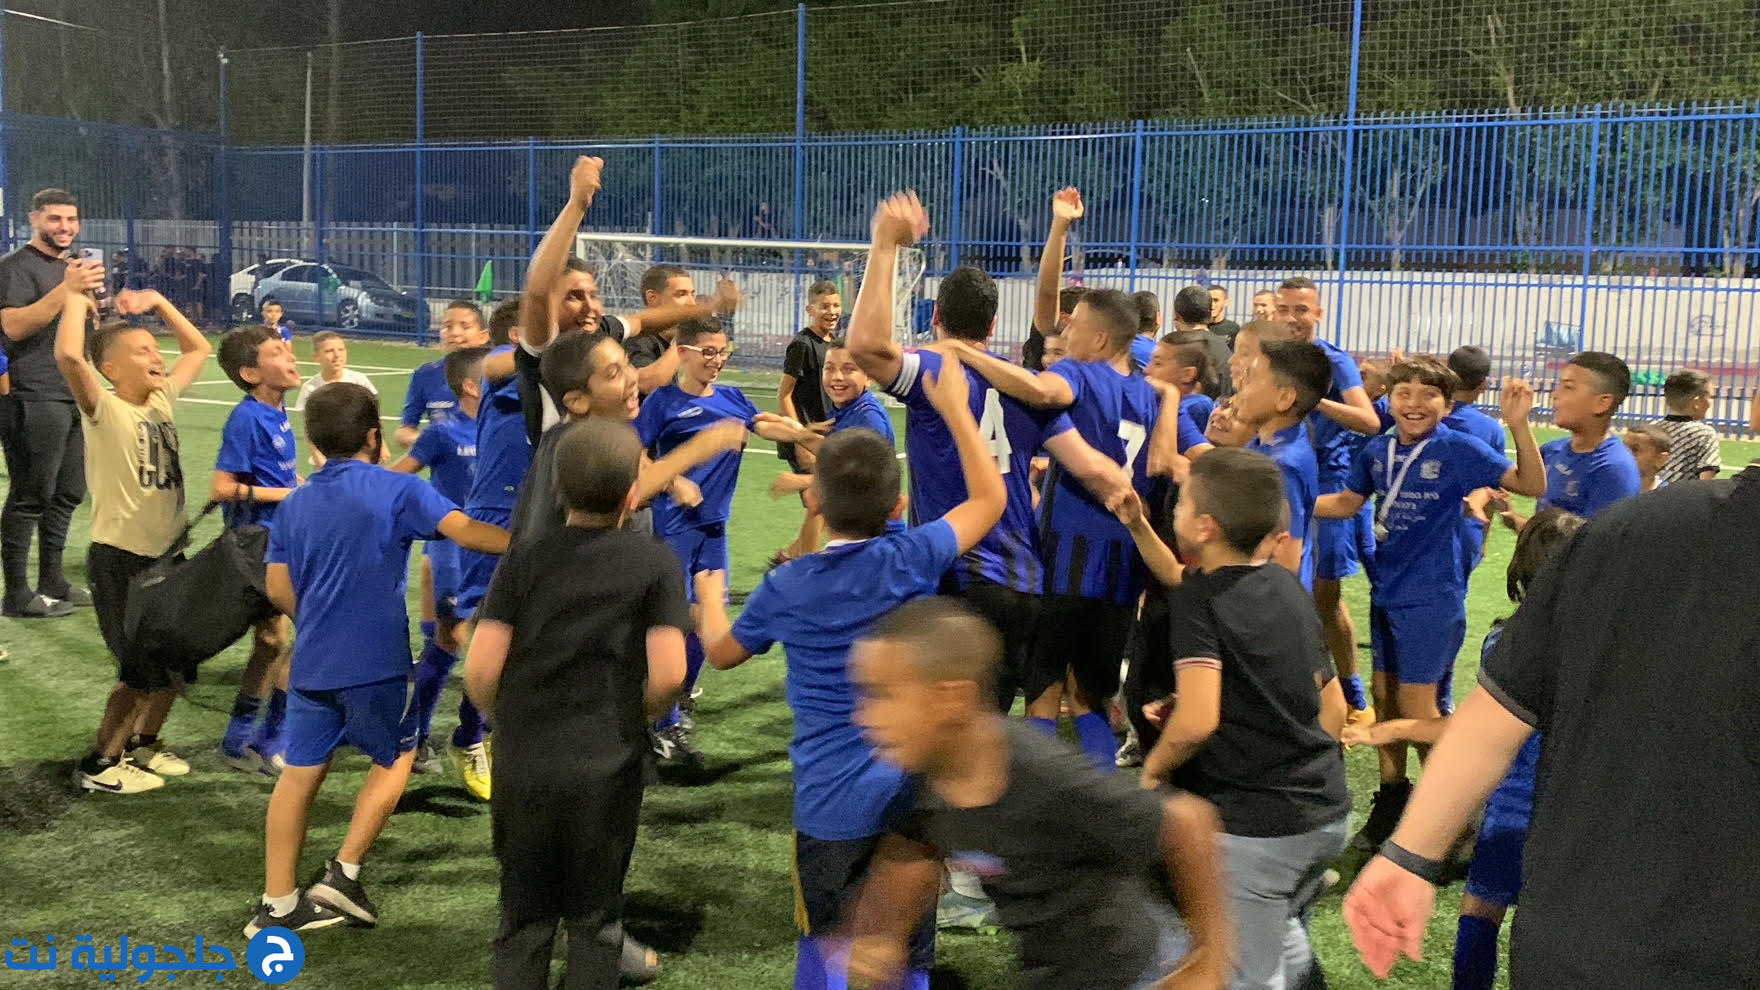 فريق راس الطبيب يفوز بكأس دوري كرة القدم المصغر في جلجولية 